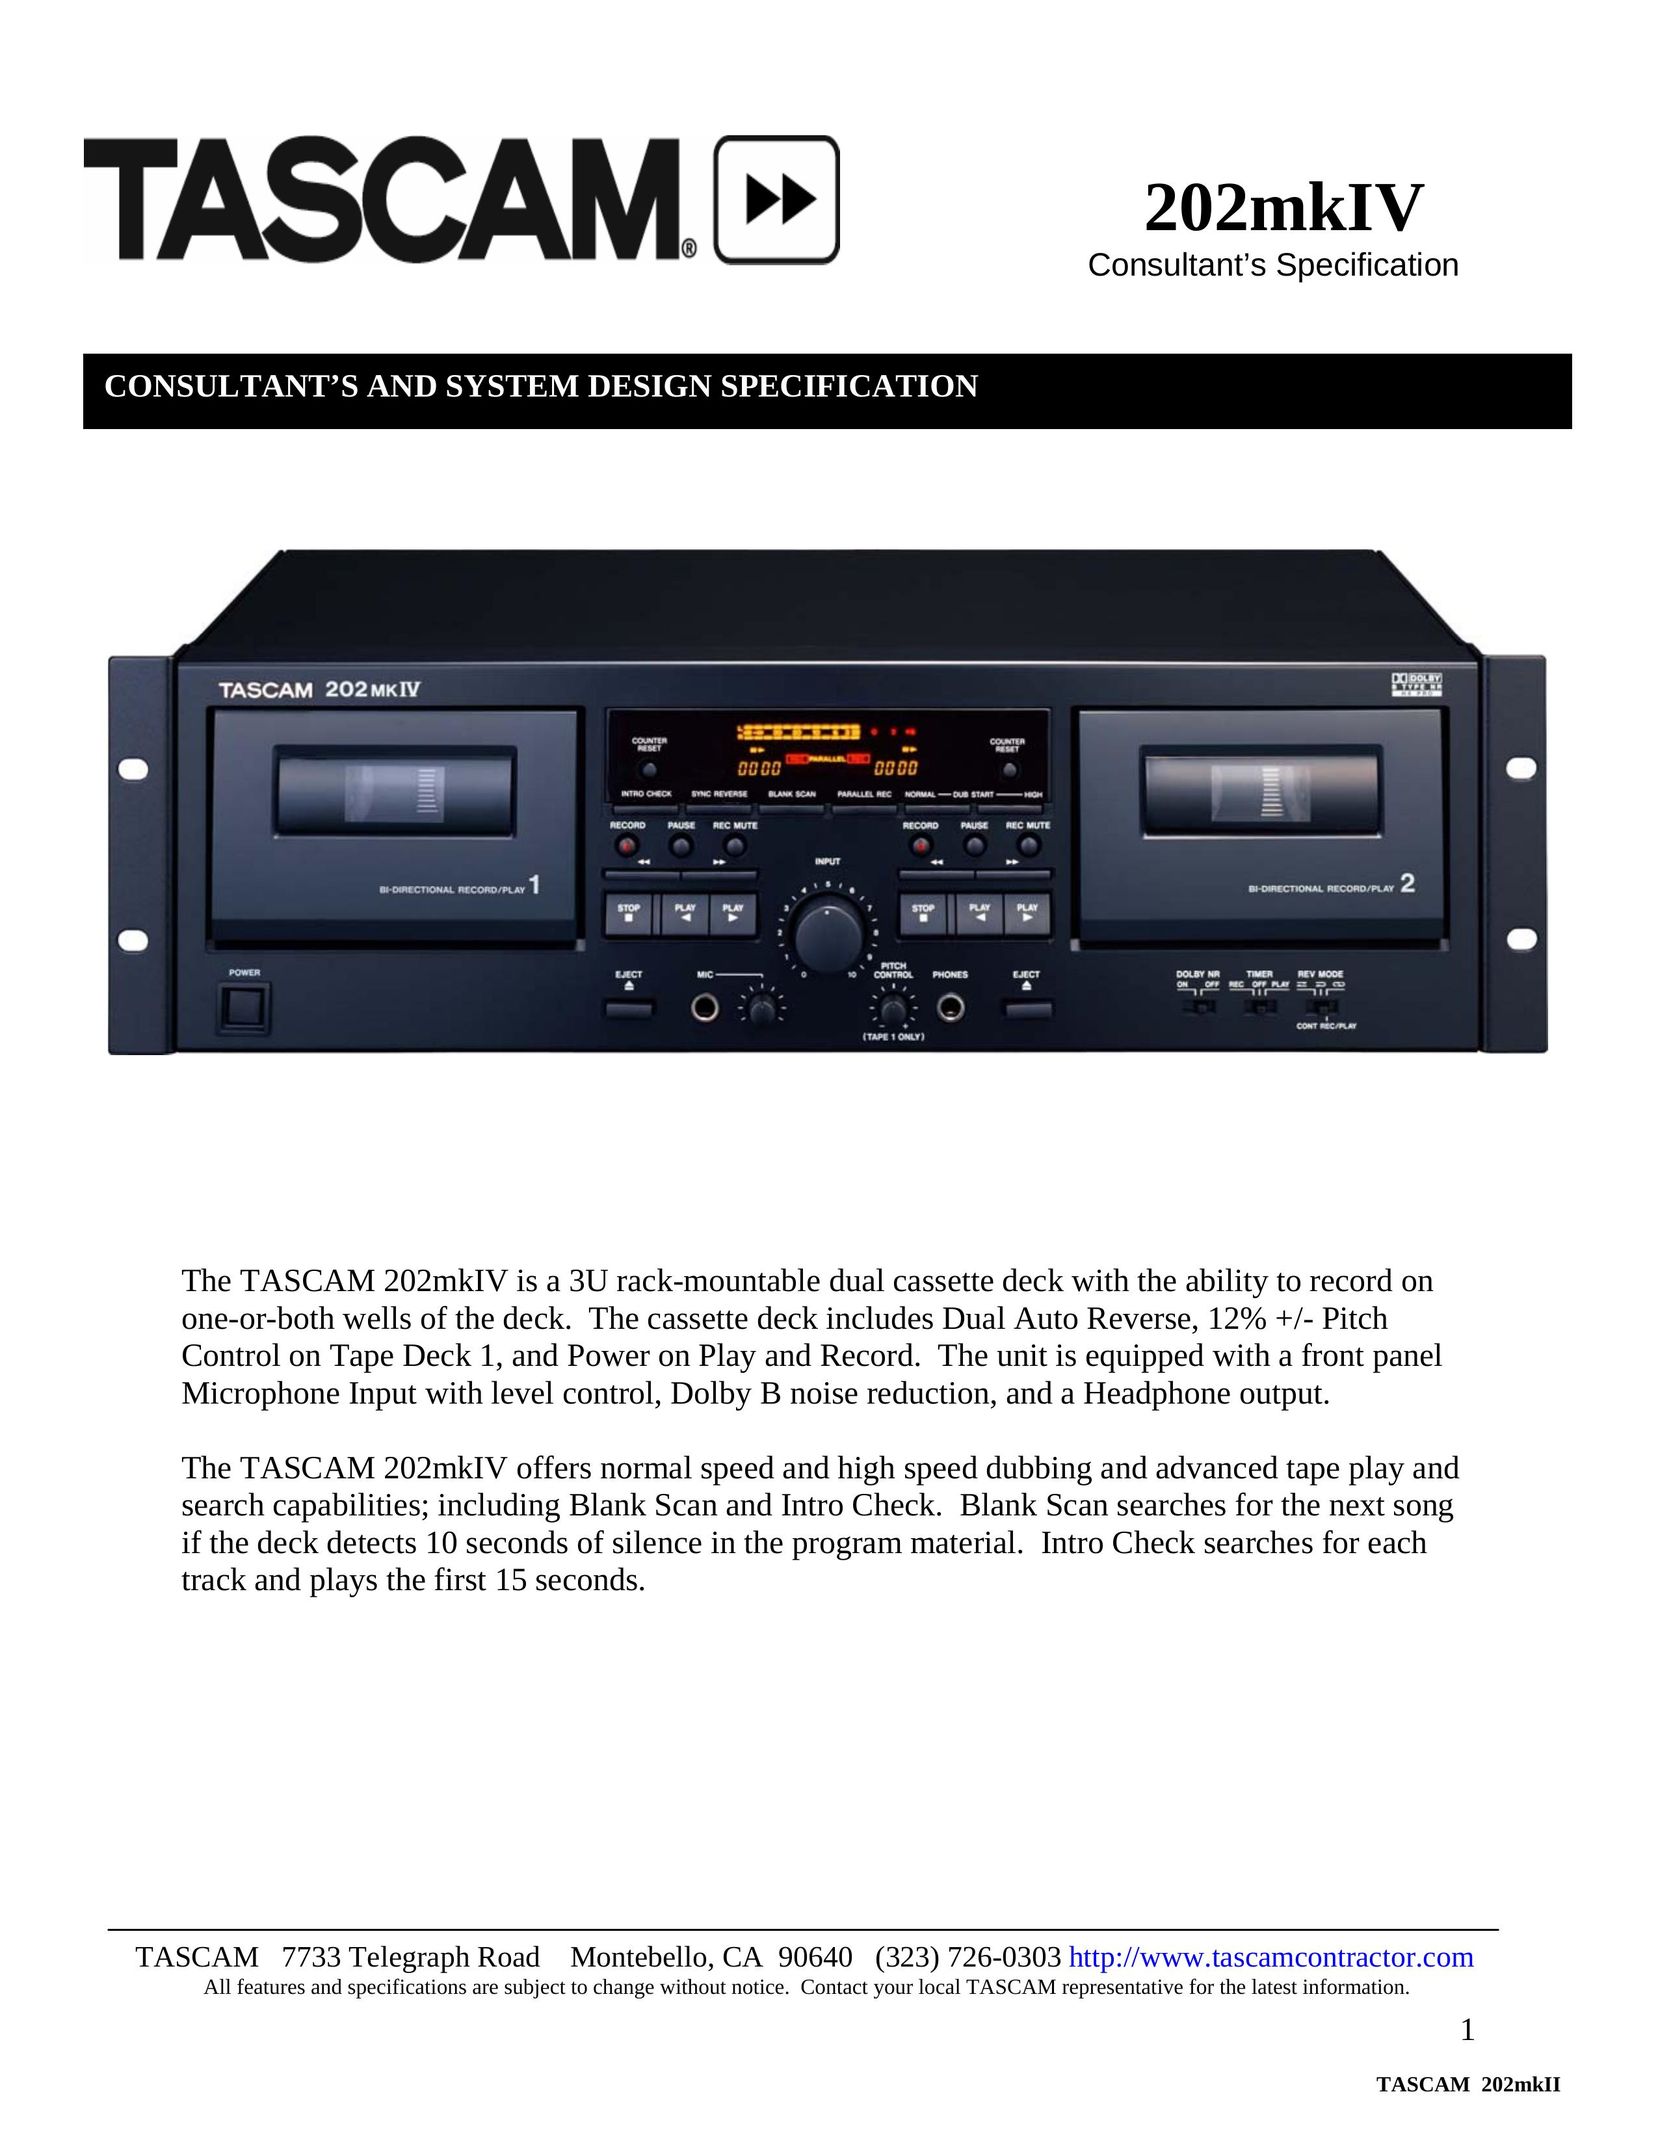 Tascam 202mkIV Cassette Player User Manual